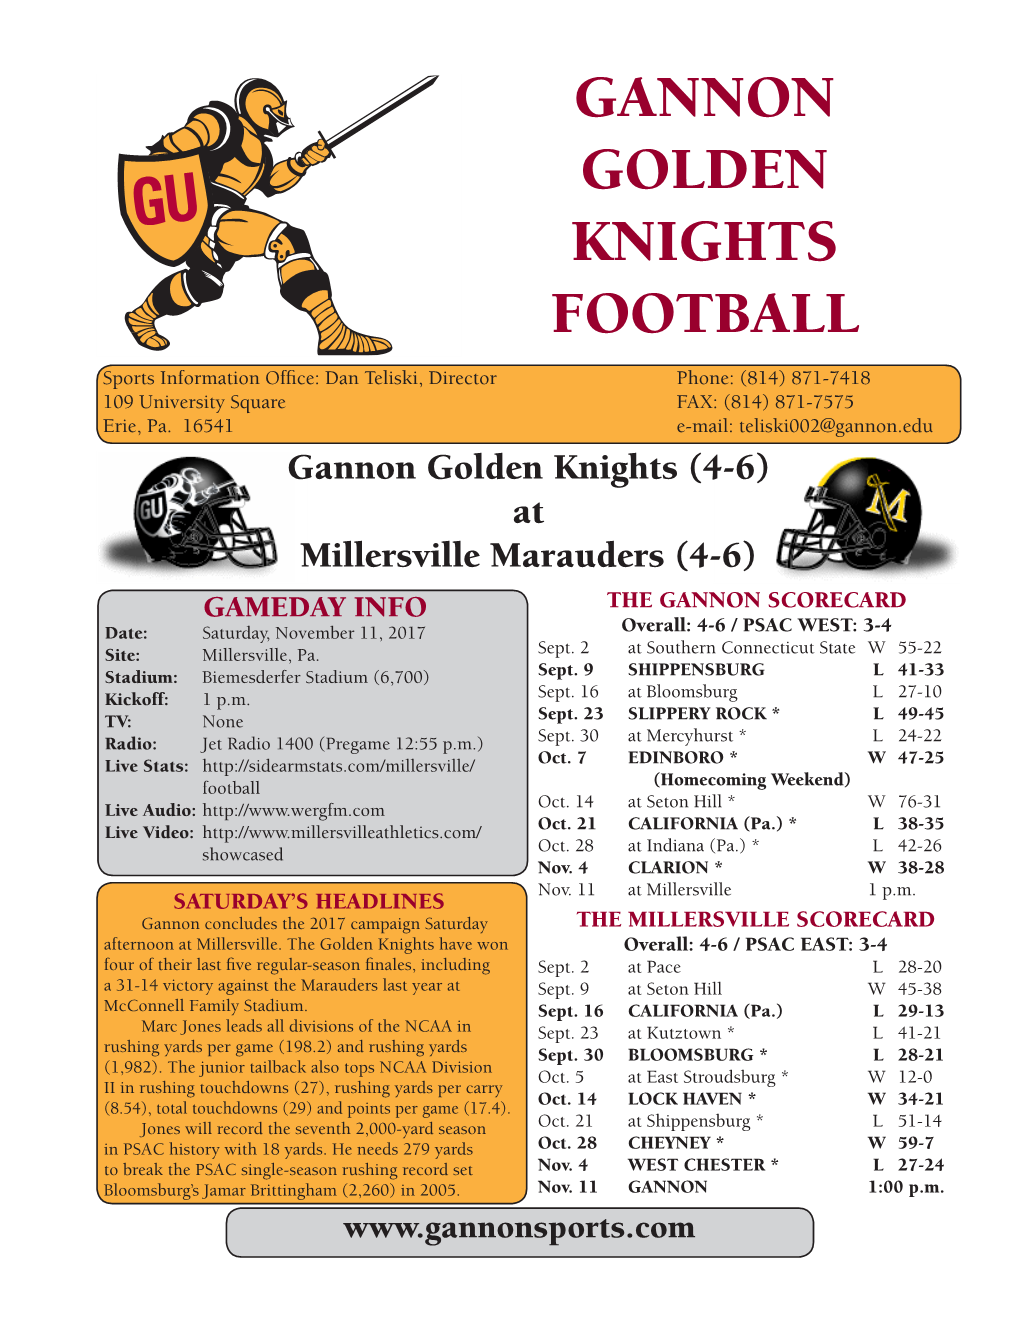 Gannon Golden Knights Football